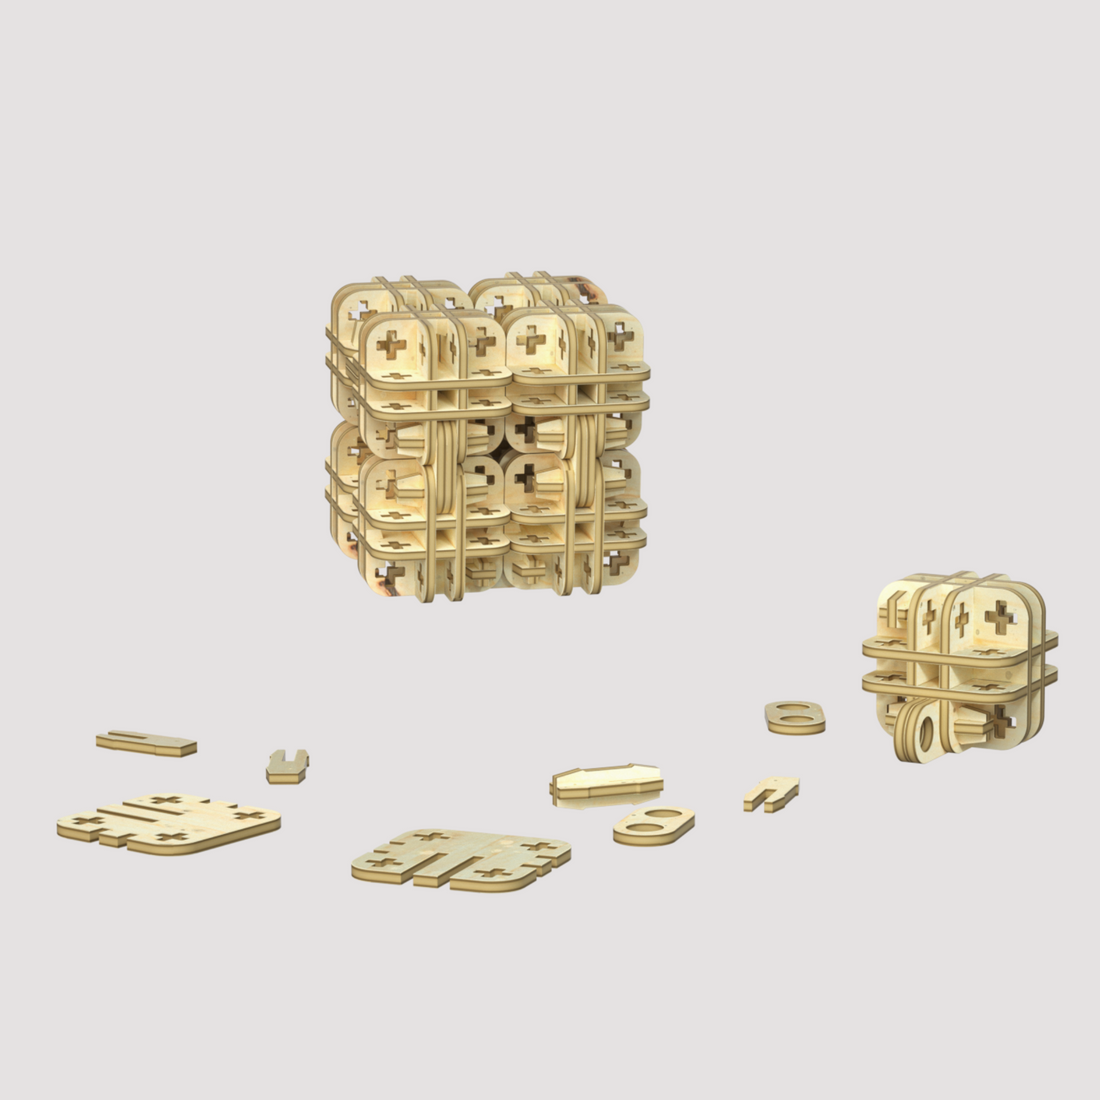 3D Wooden Puzzles Decompress Rubik&